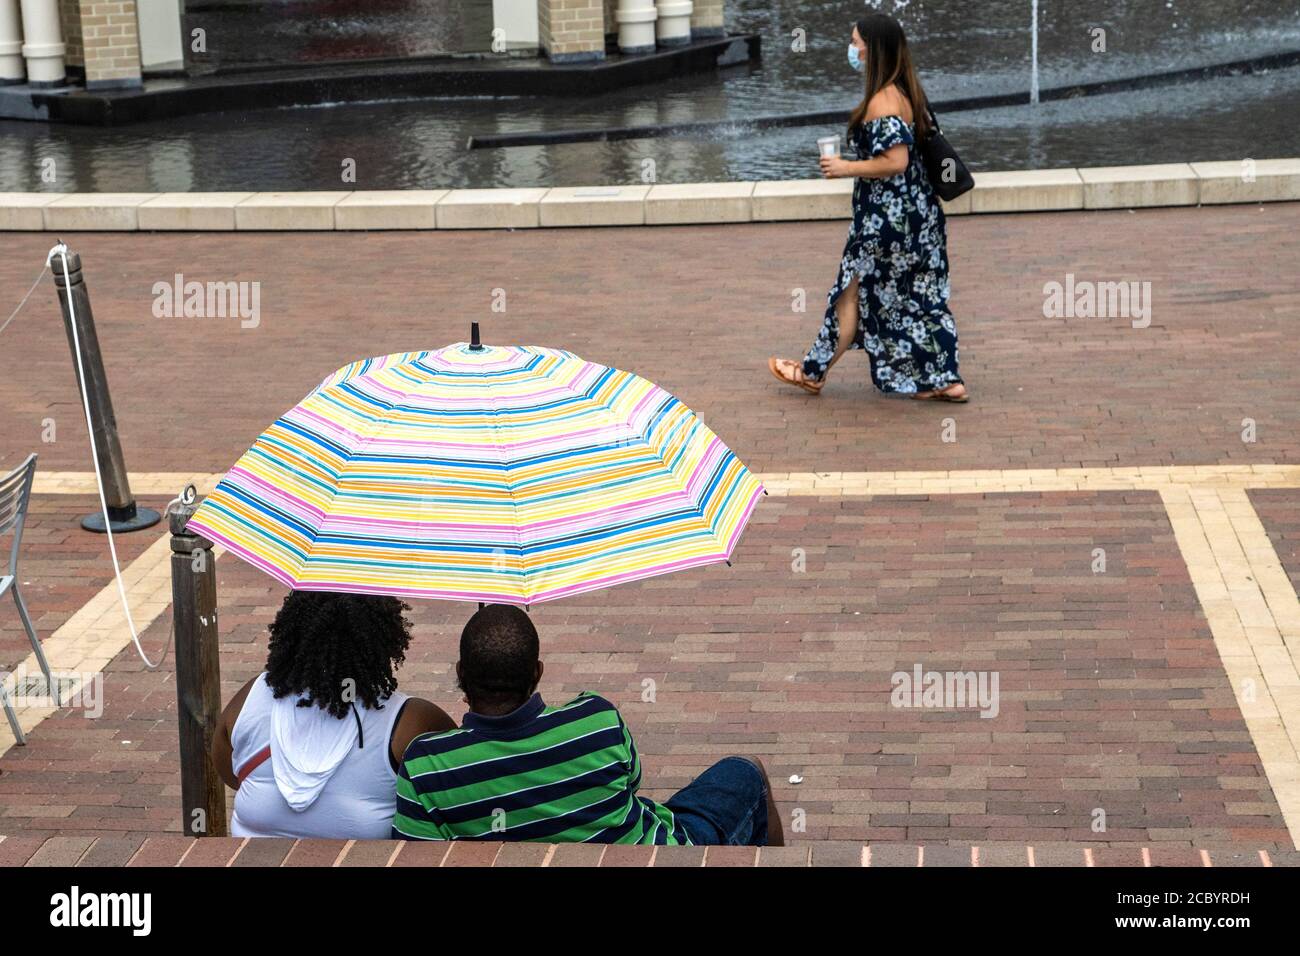 Una coppia riparata sotto un ombrello guarda un passerby. Foto Stock